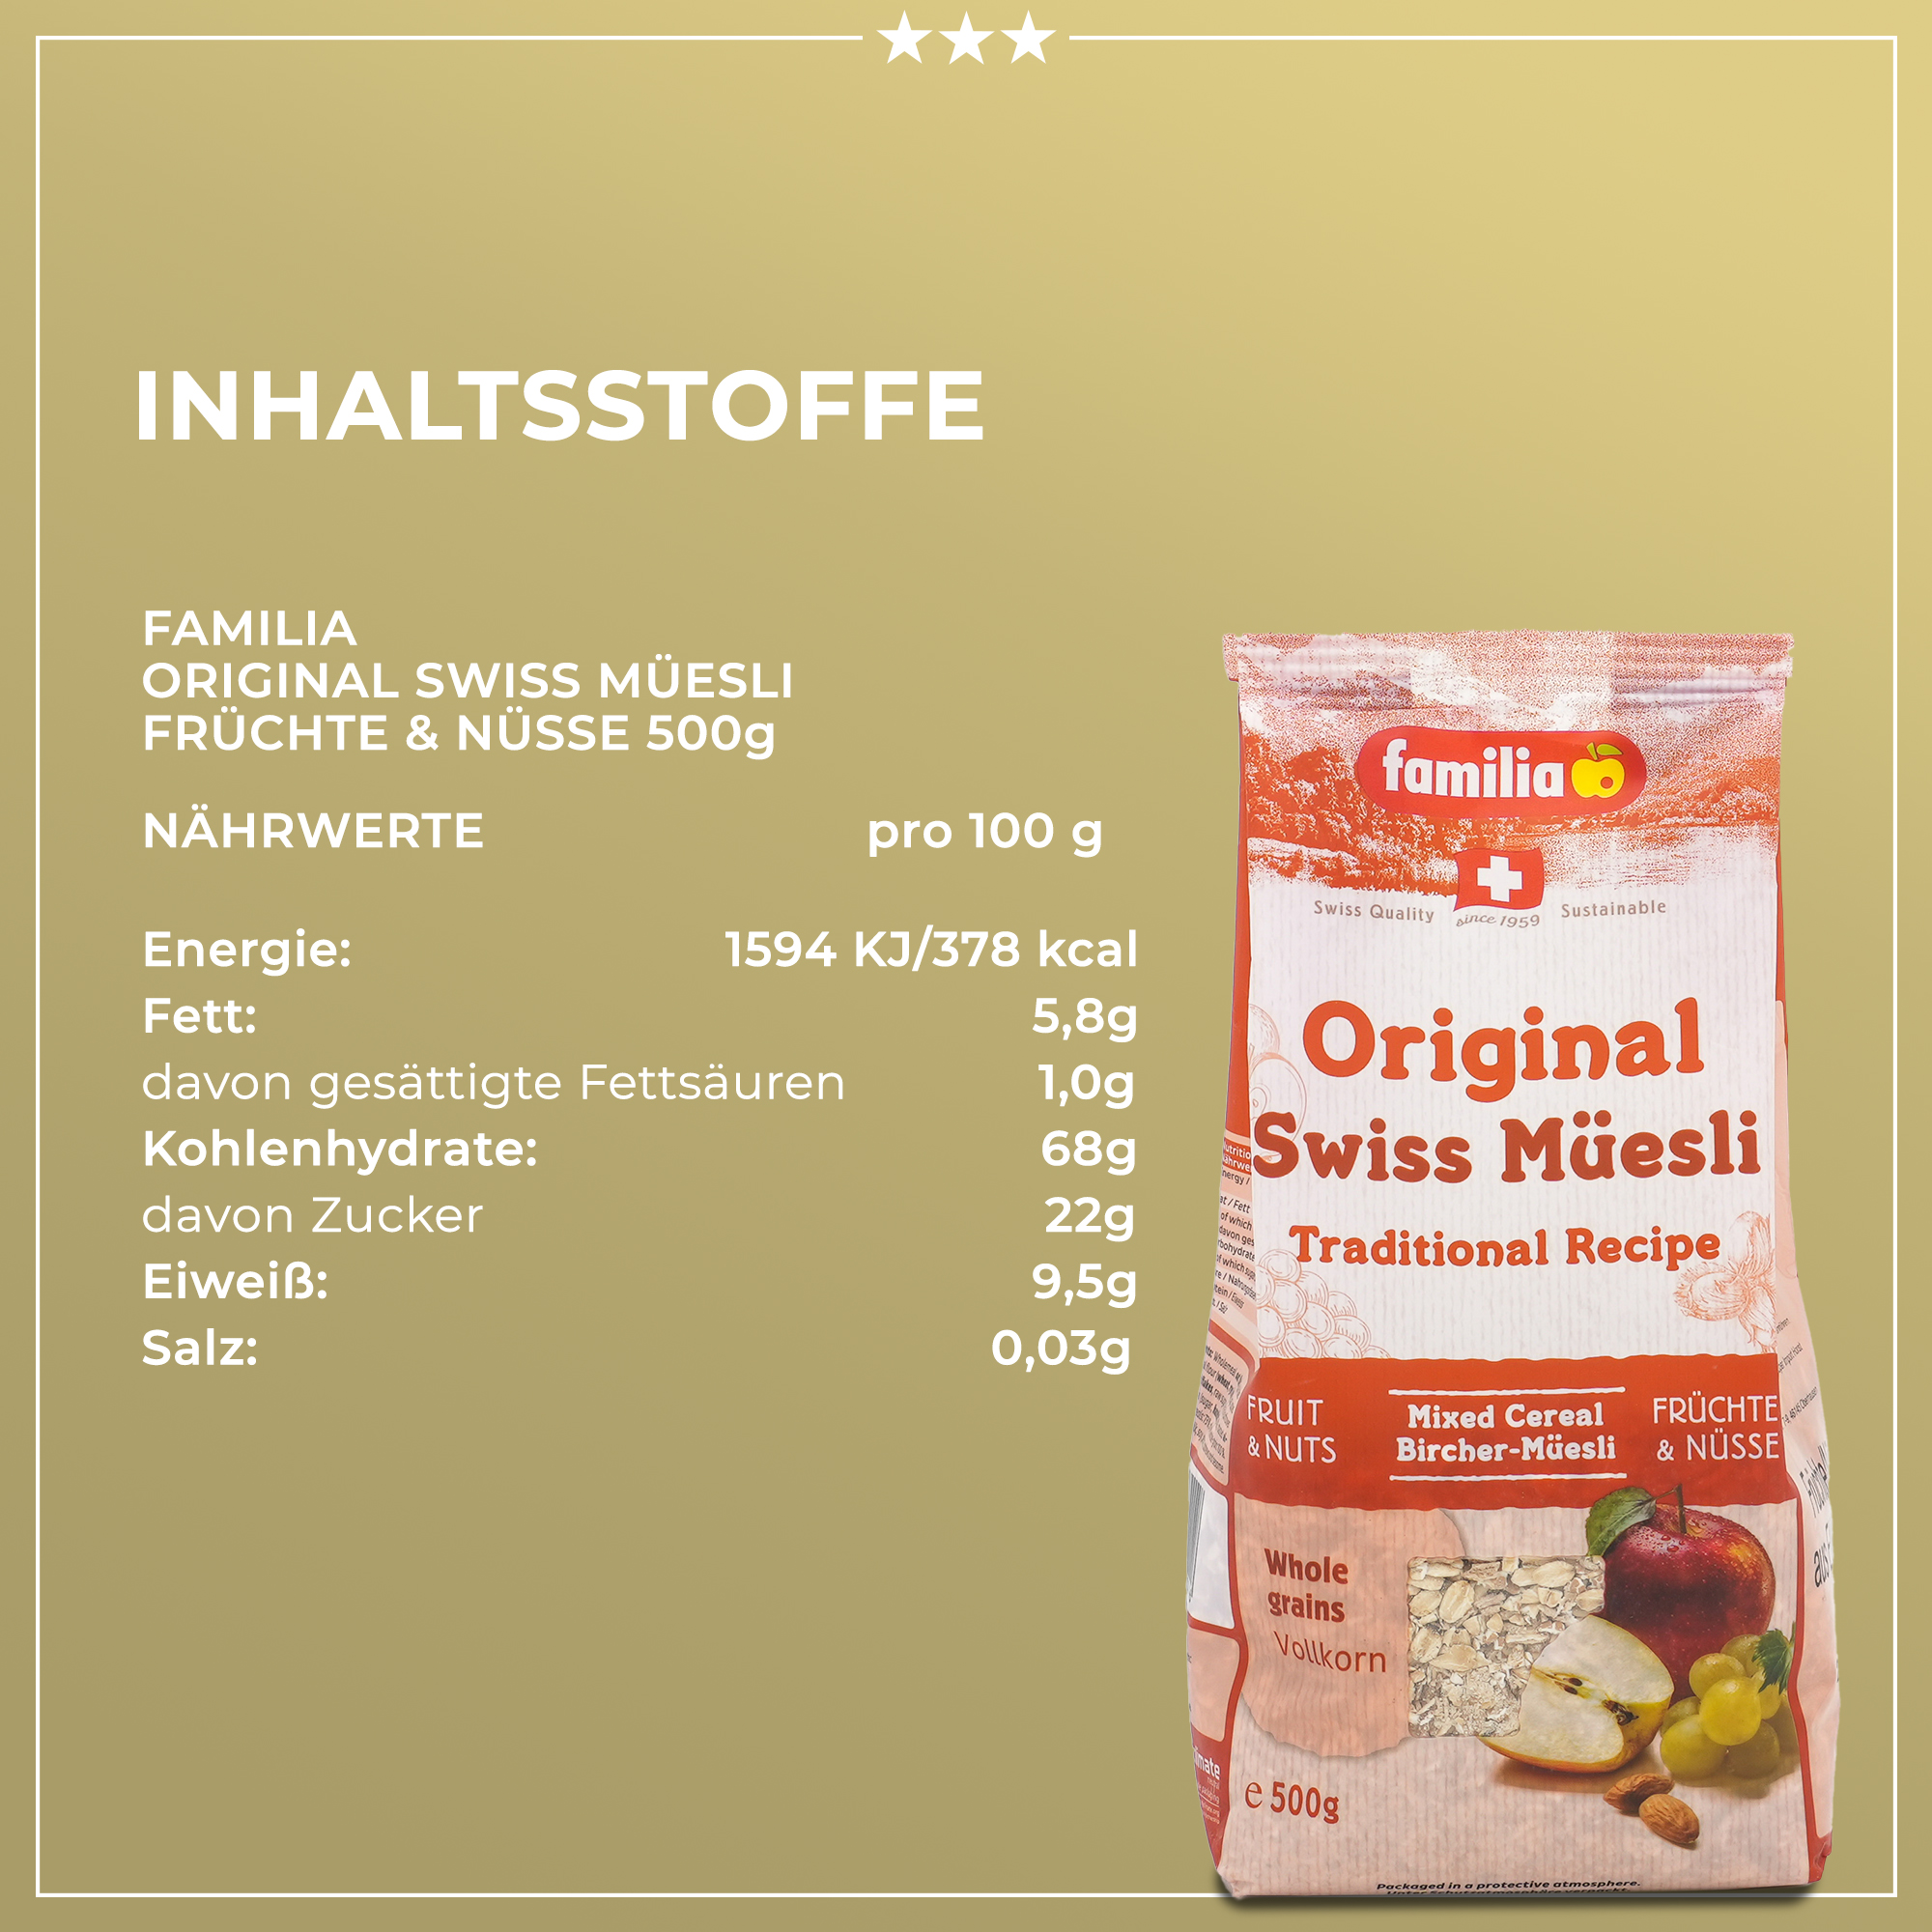  Premium Müsli aus der Schweiz | Das Original vom Erfinder des Bircher Müslis |  Familia  | 500g | 100% Vollkorn | Traditionelles Frühstück